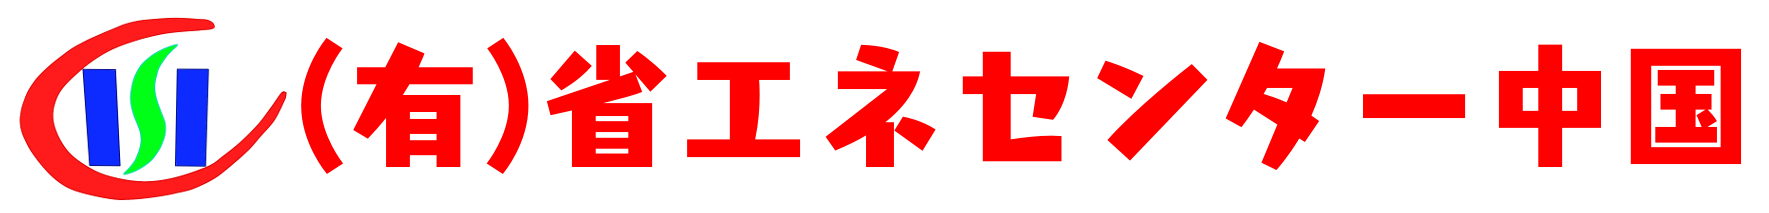 有限会社省エネセンター中国のロゴ